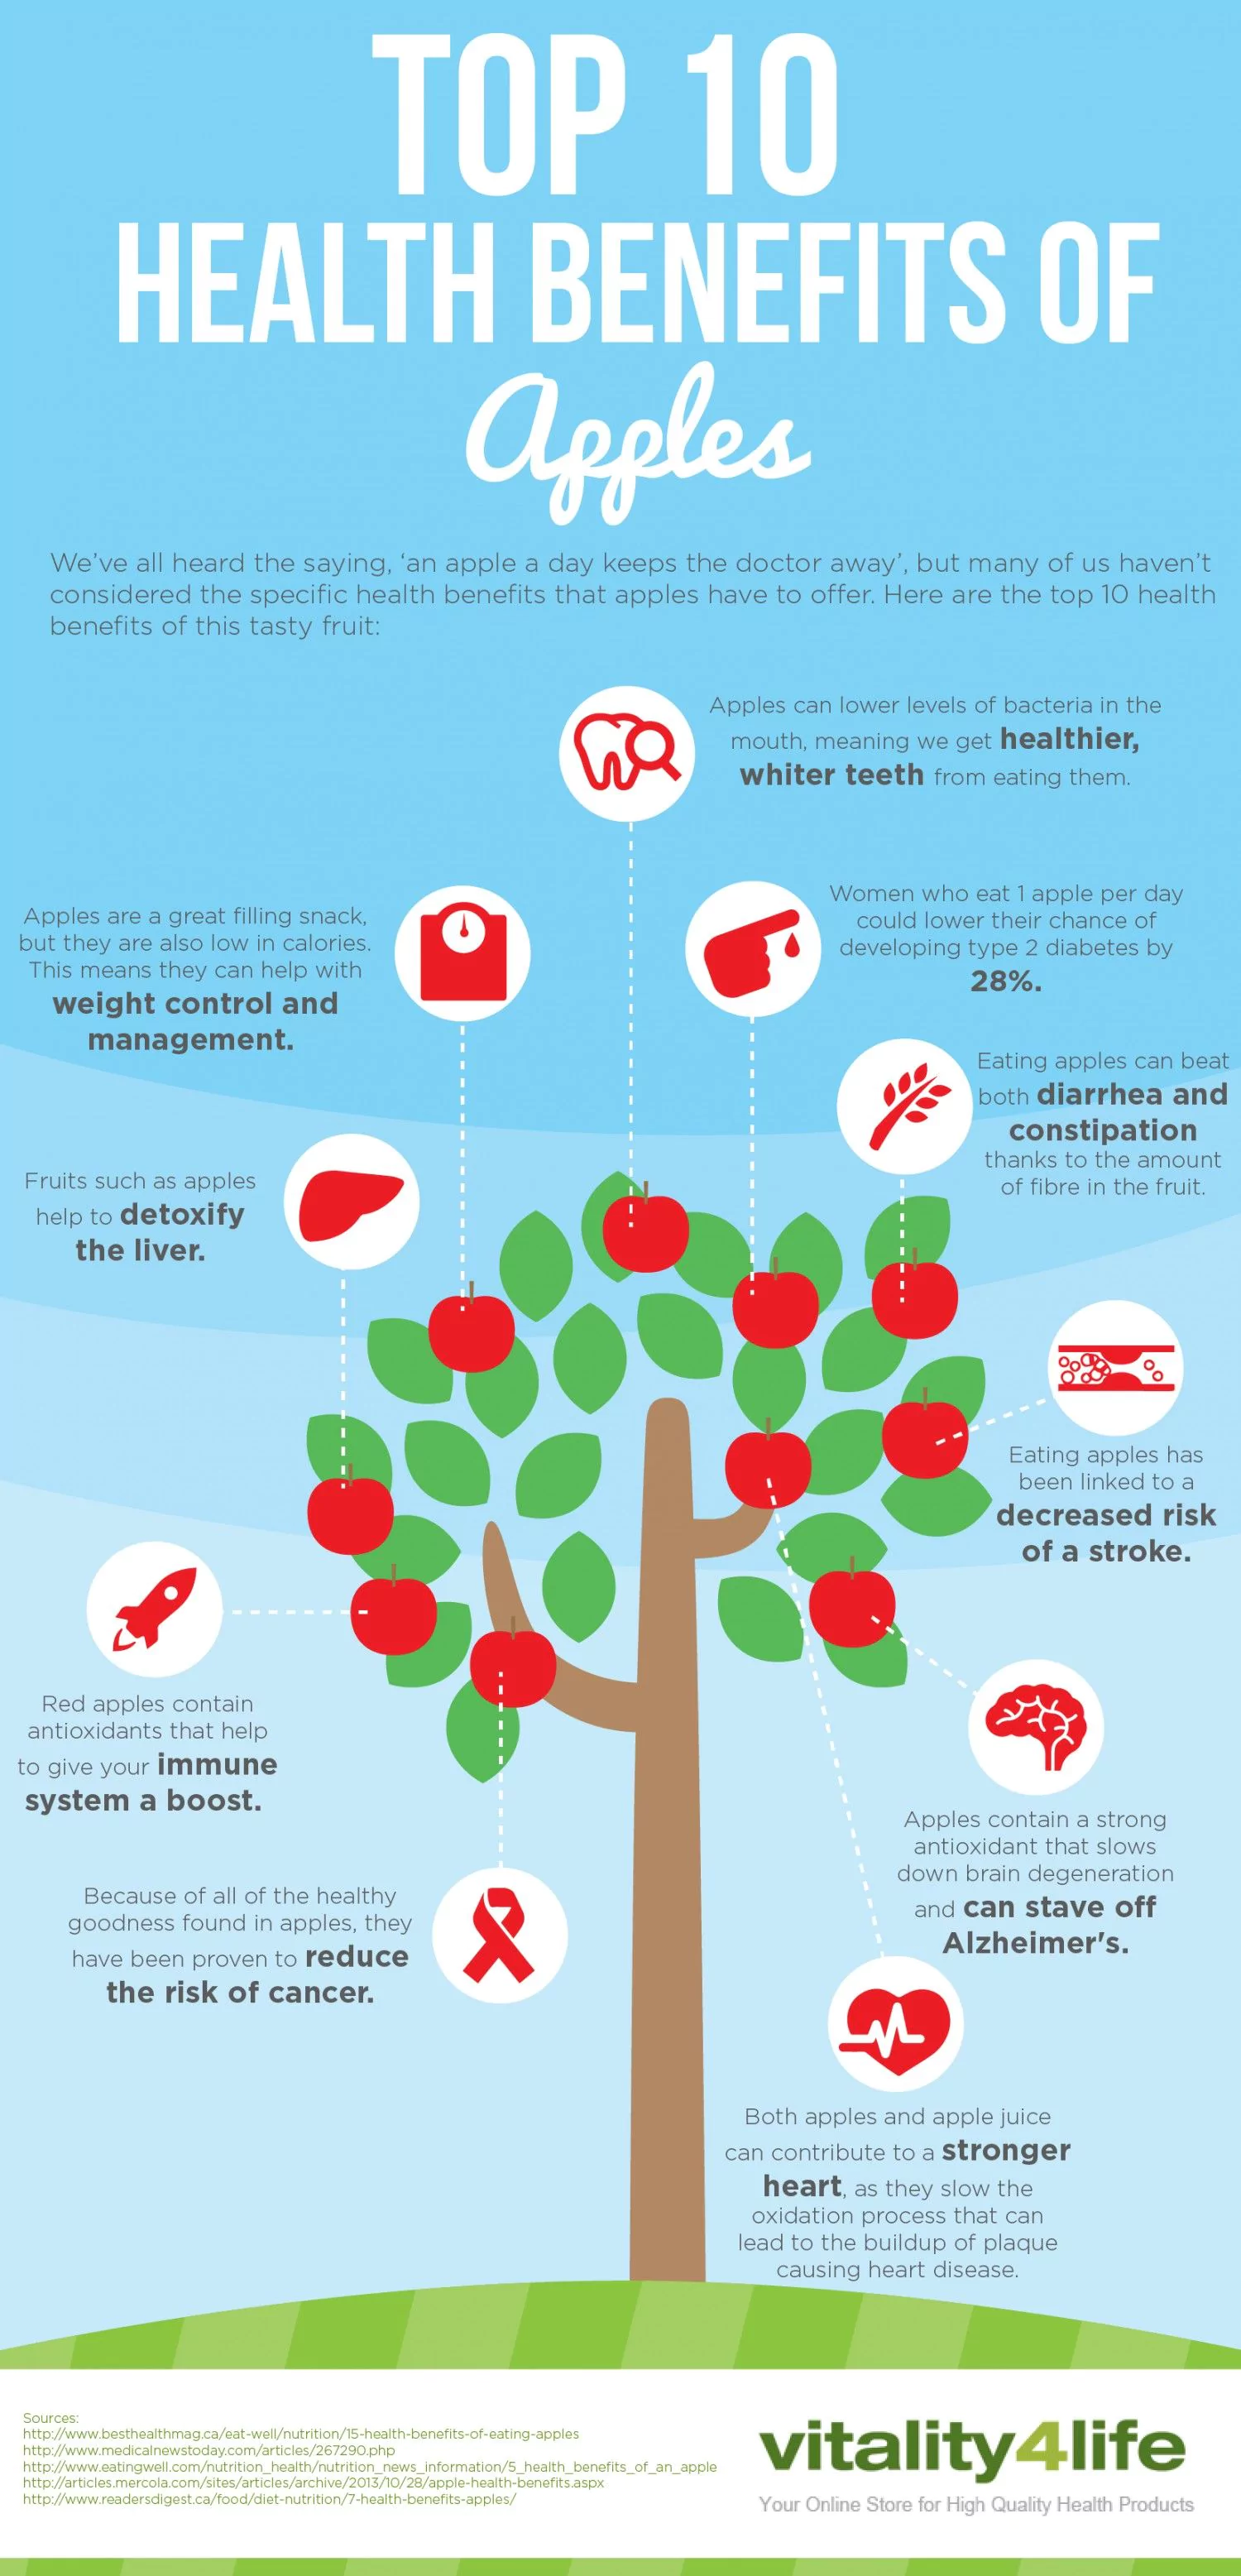 Top 10 Health Benefits of Apples